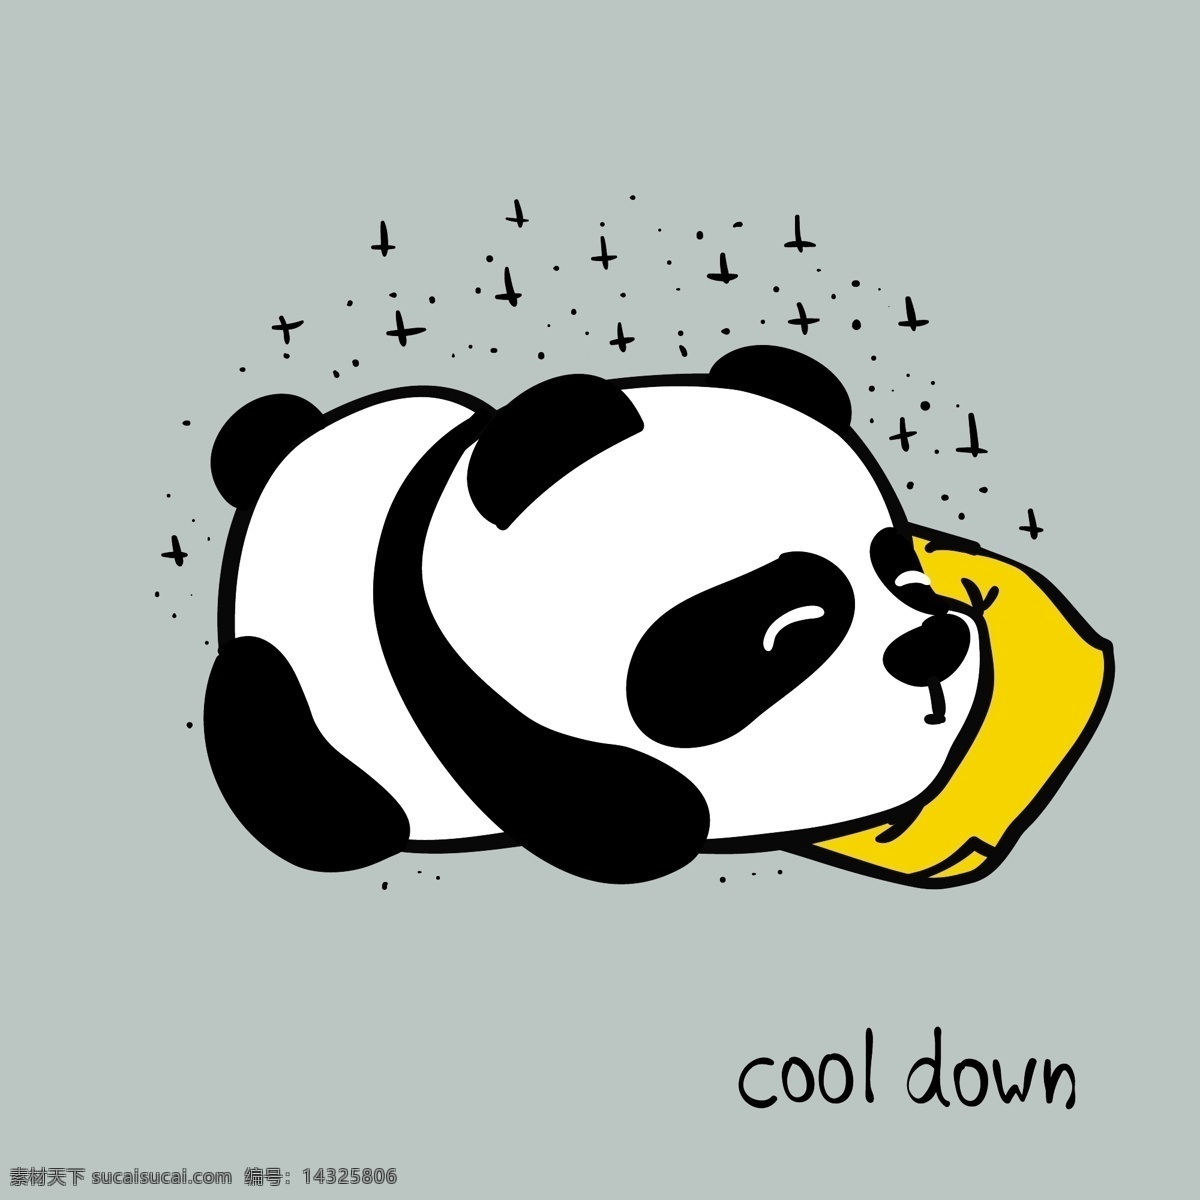 贪婪 小熊猫 卡通 动物 黑白 平面素材 设计素材 生活 矢量素材 温暖 熊猫 艺术